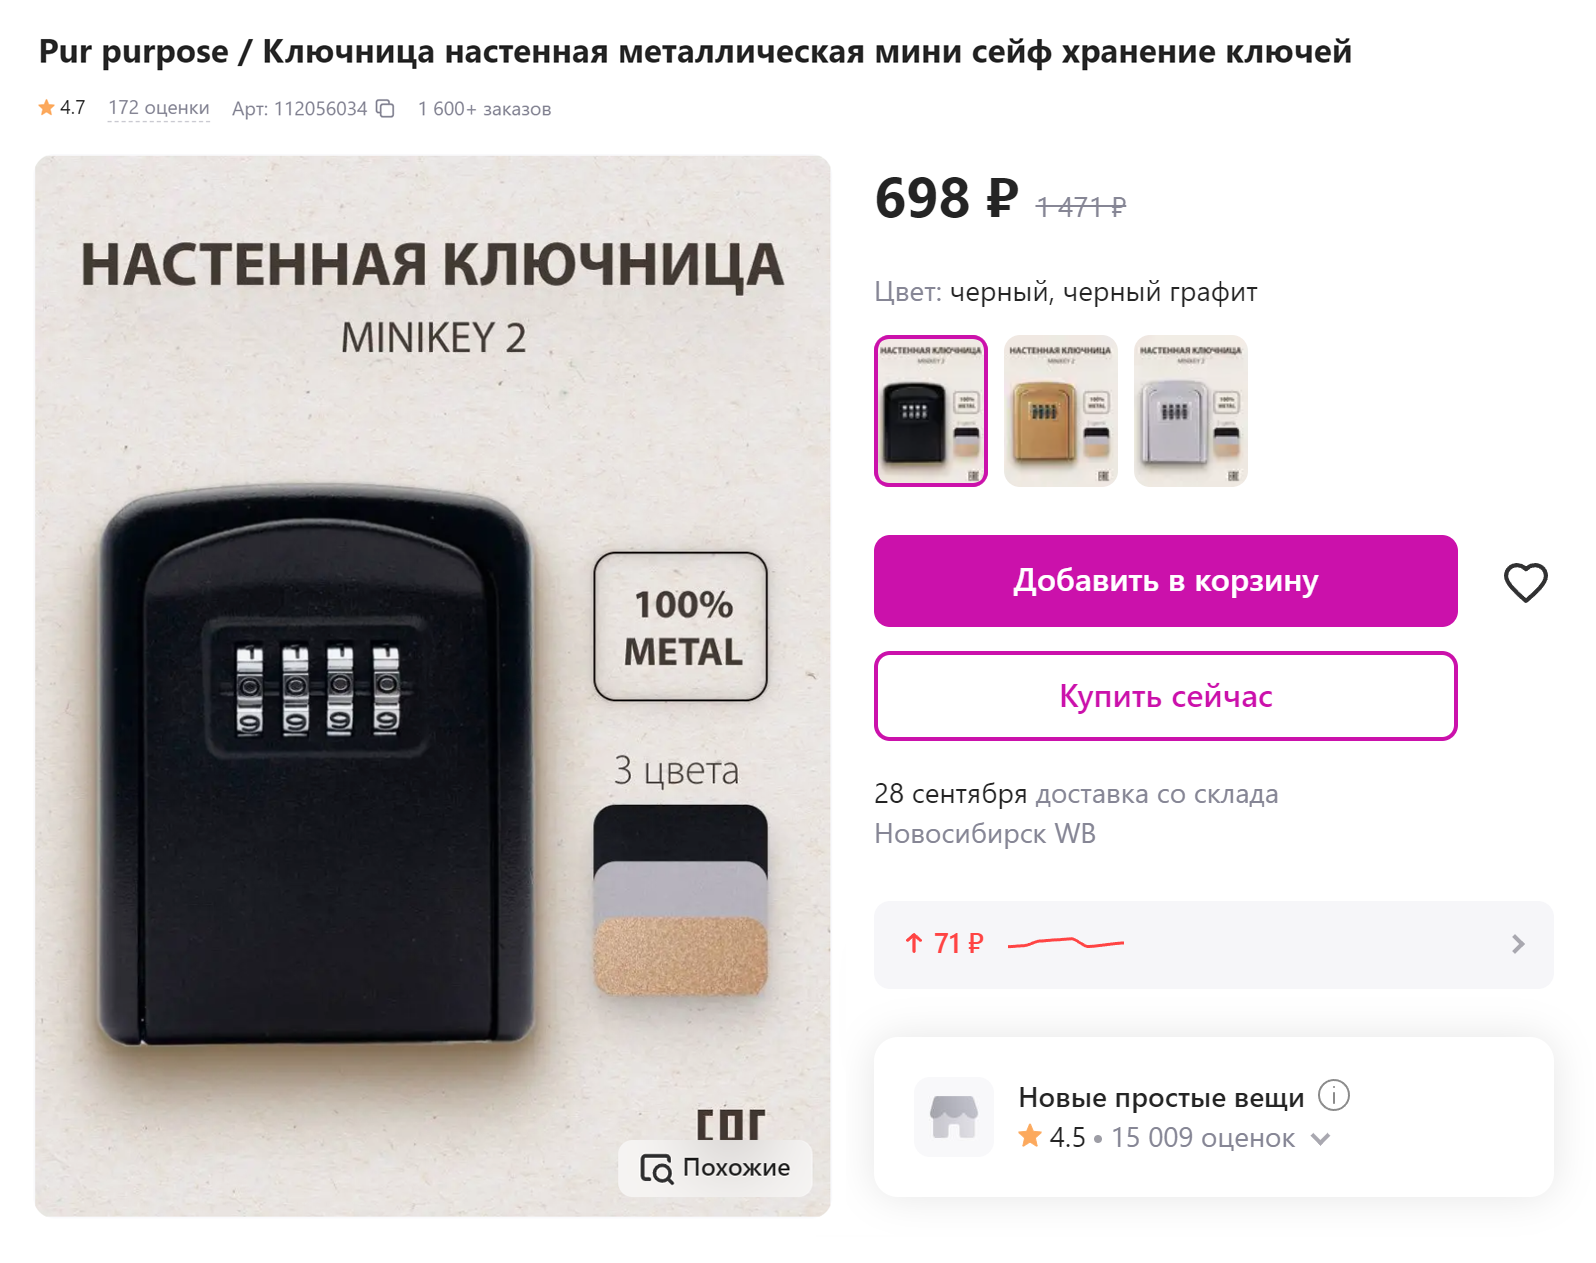 Стоимость ключницы не превысила 700 ₽. Источник: wildberries.ru